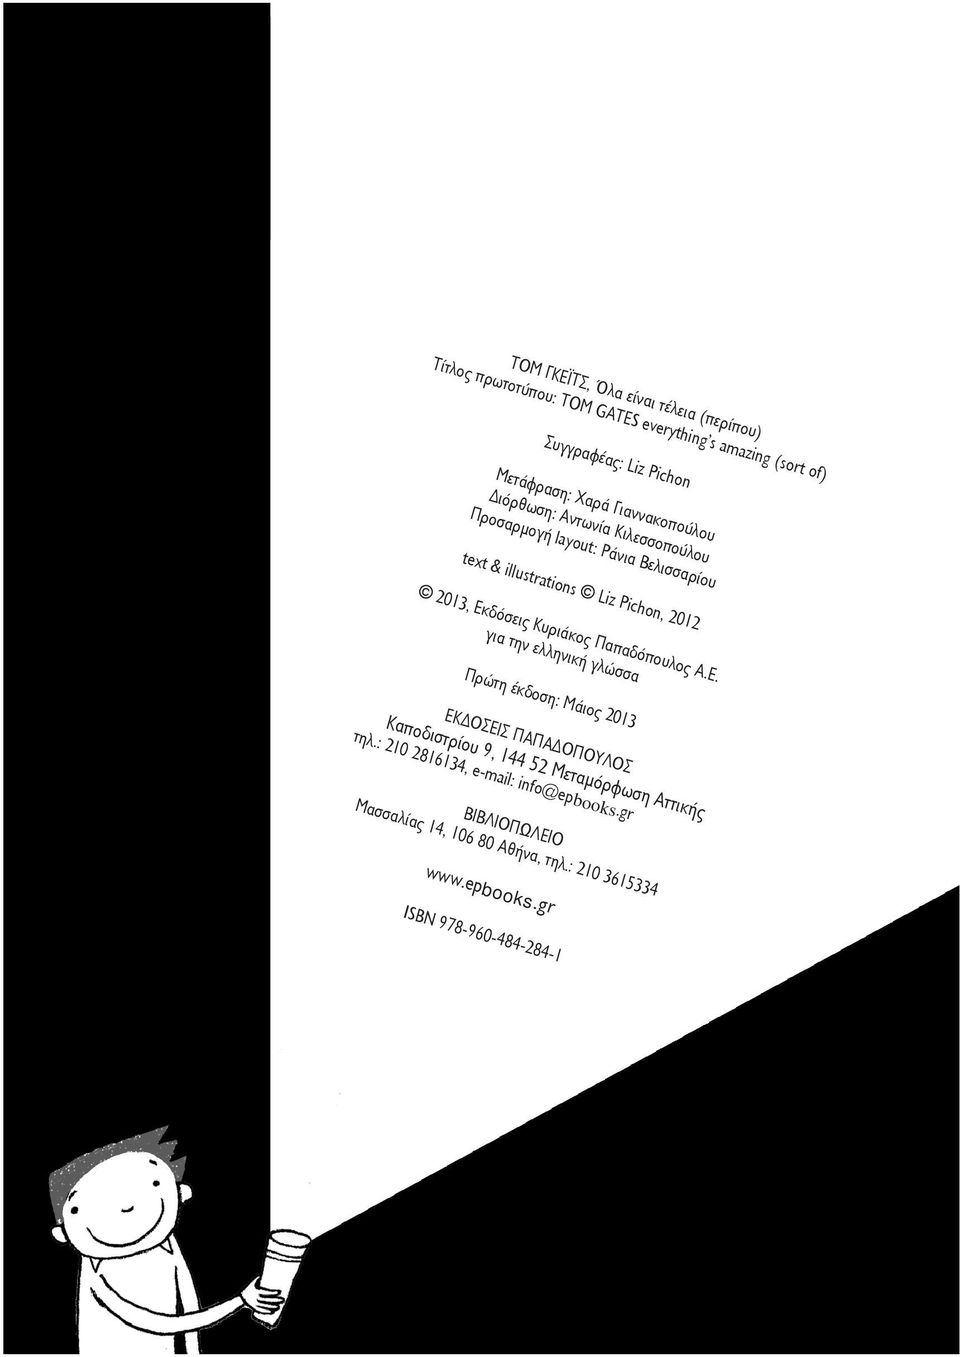 Χαρά Γιαννακοπούλου Διόρθωση: Αντωνία Κιλεσσοπούλου Προσαρμογή layout: Ράνια Βελισσαρίου text & illustrations Liz Pichon, 2012 2013,